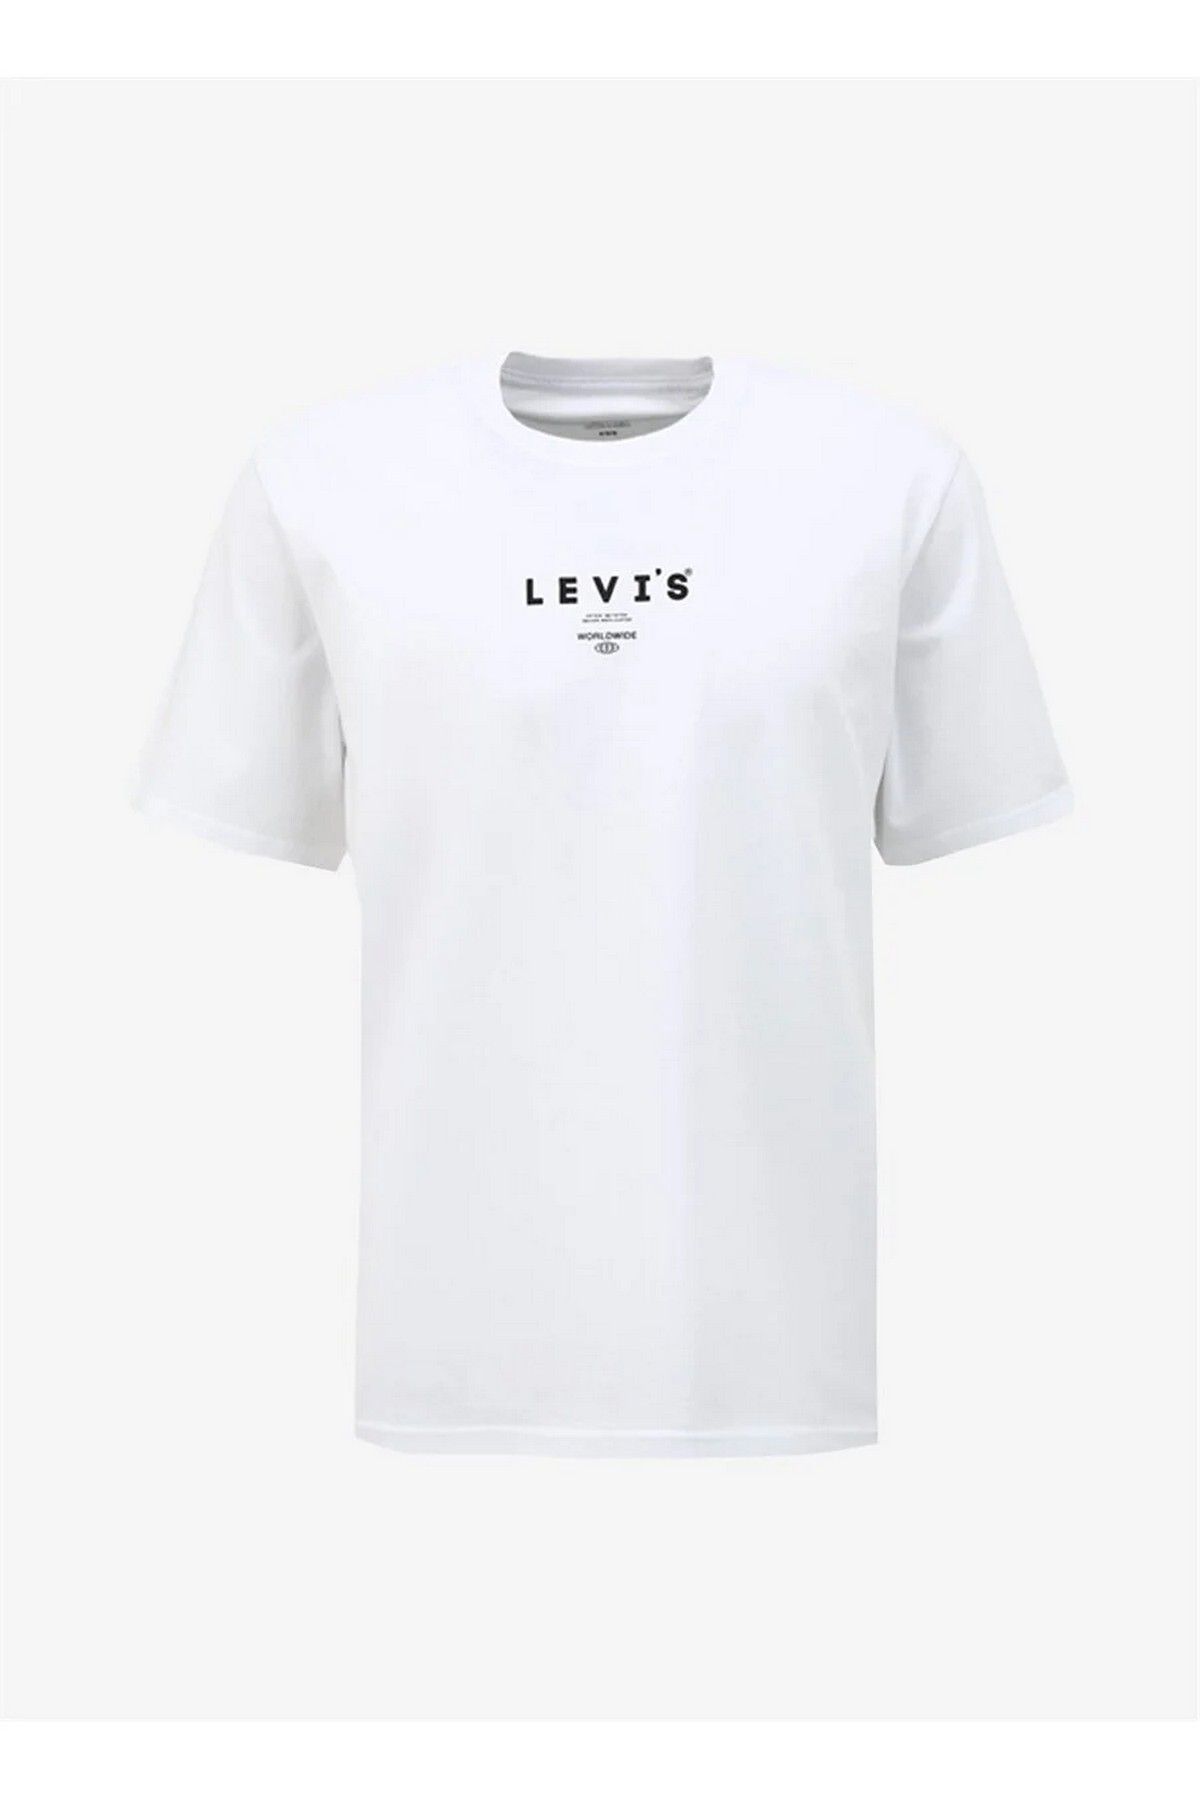 Levi's T-shirt Beyaz L Beden